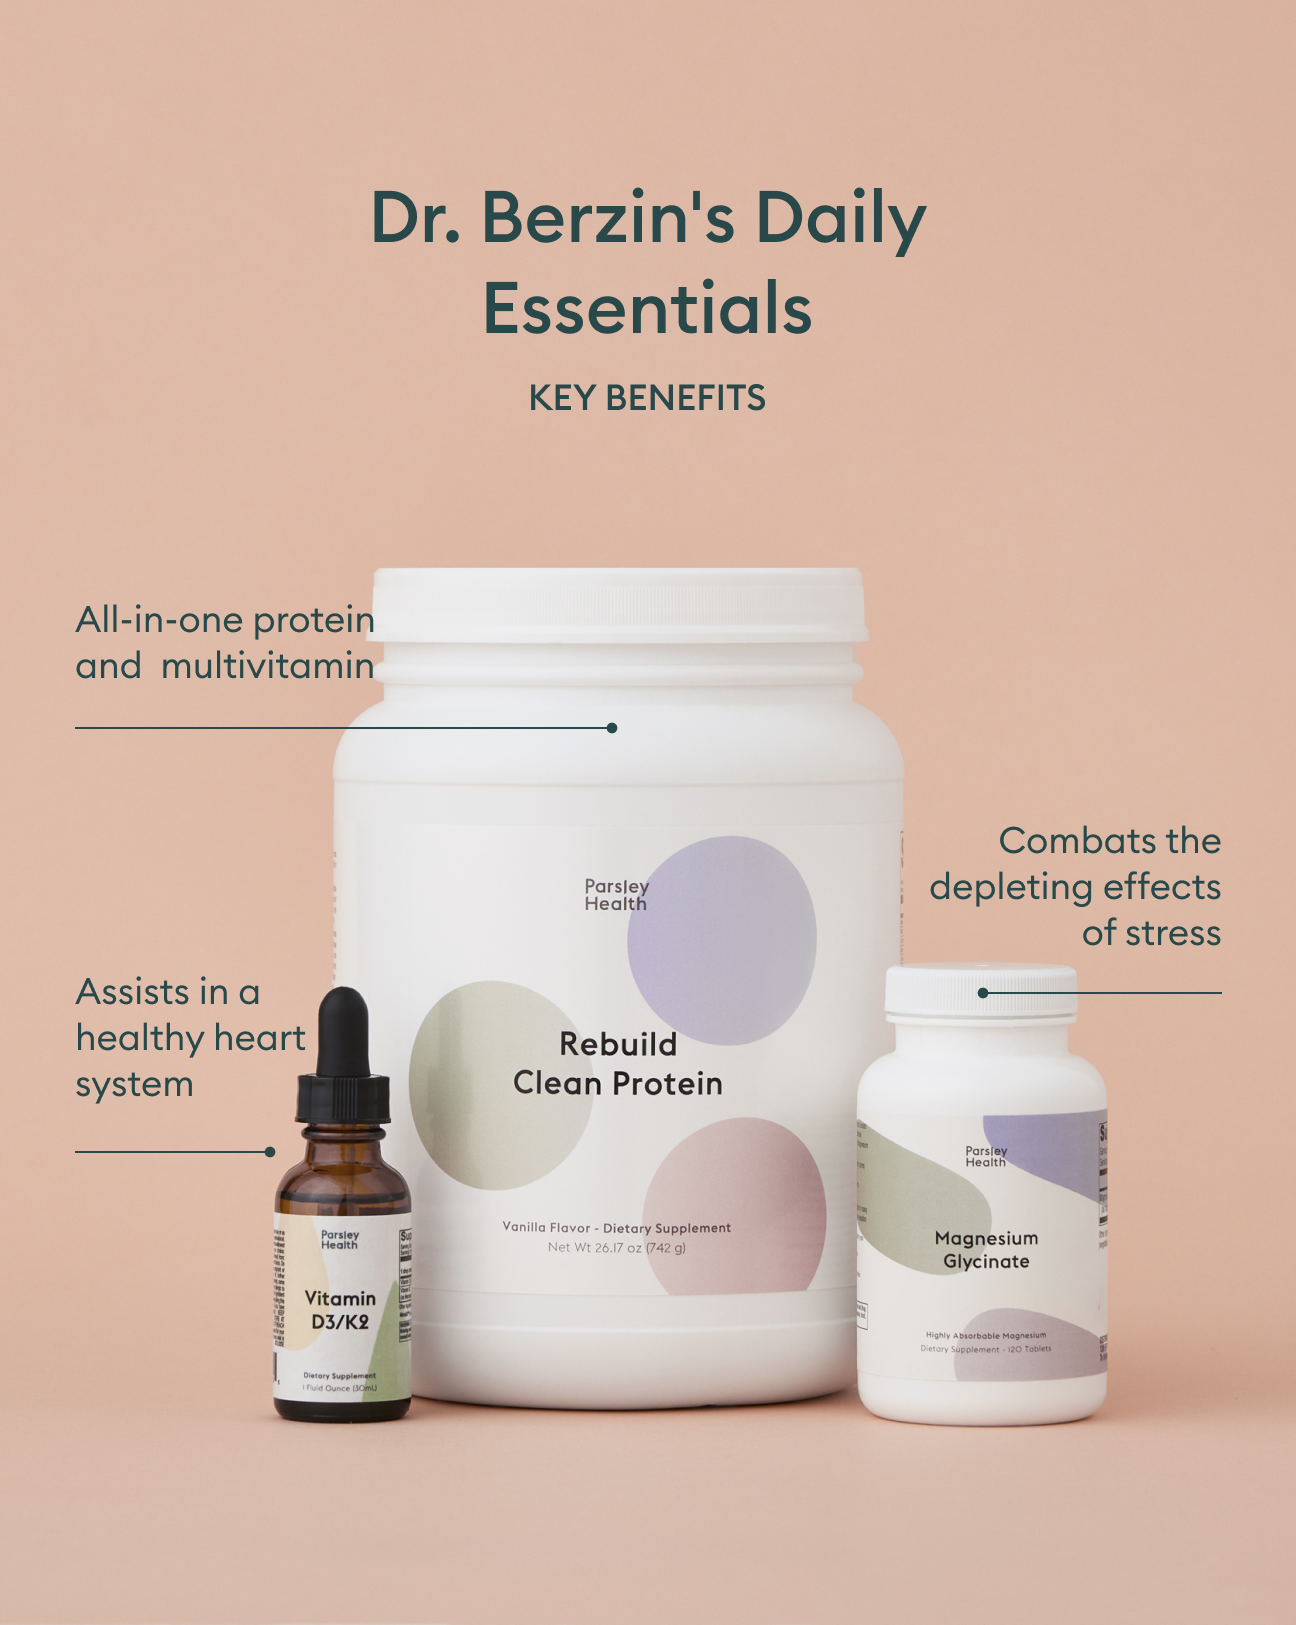 Dr. Berzin's Daily Essentials